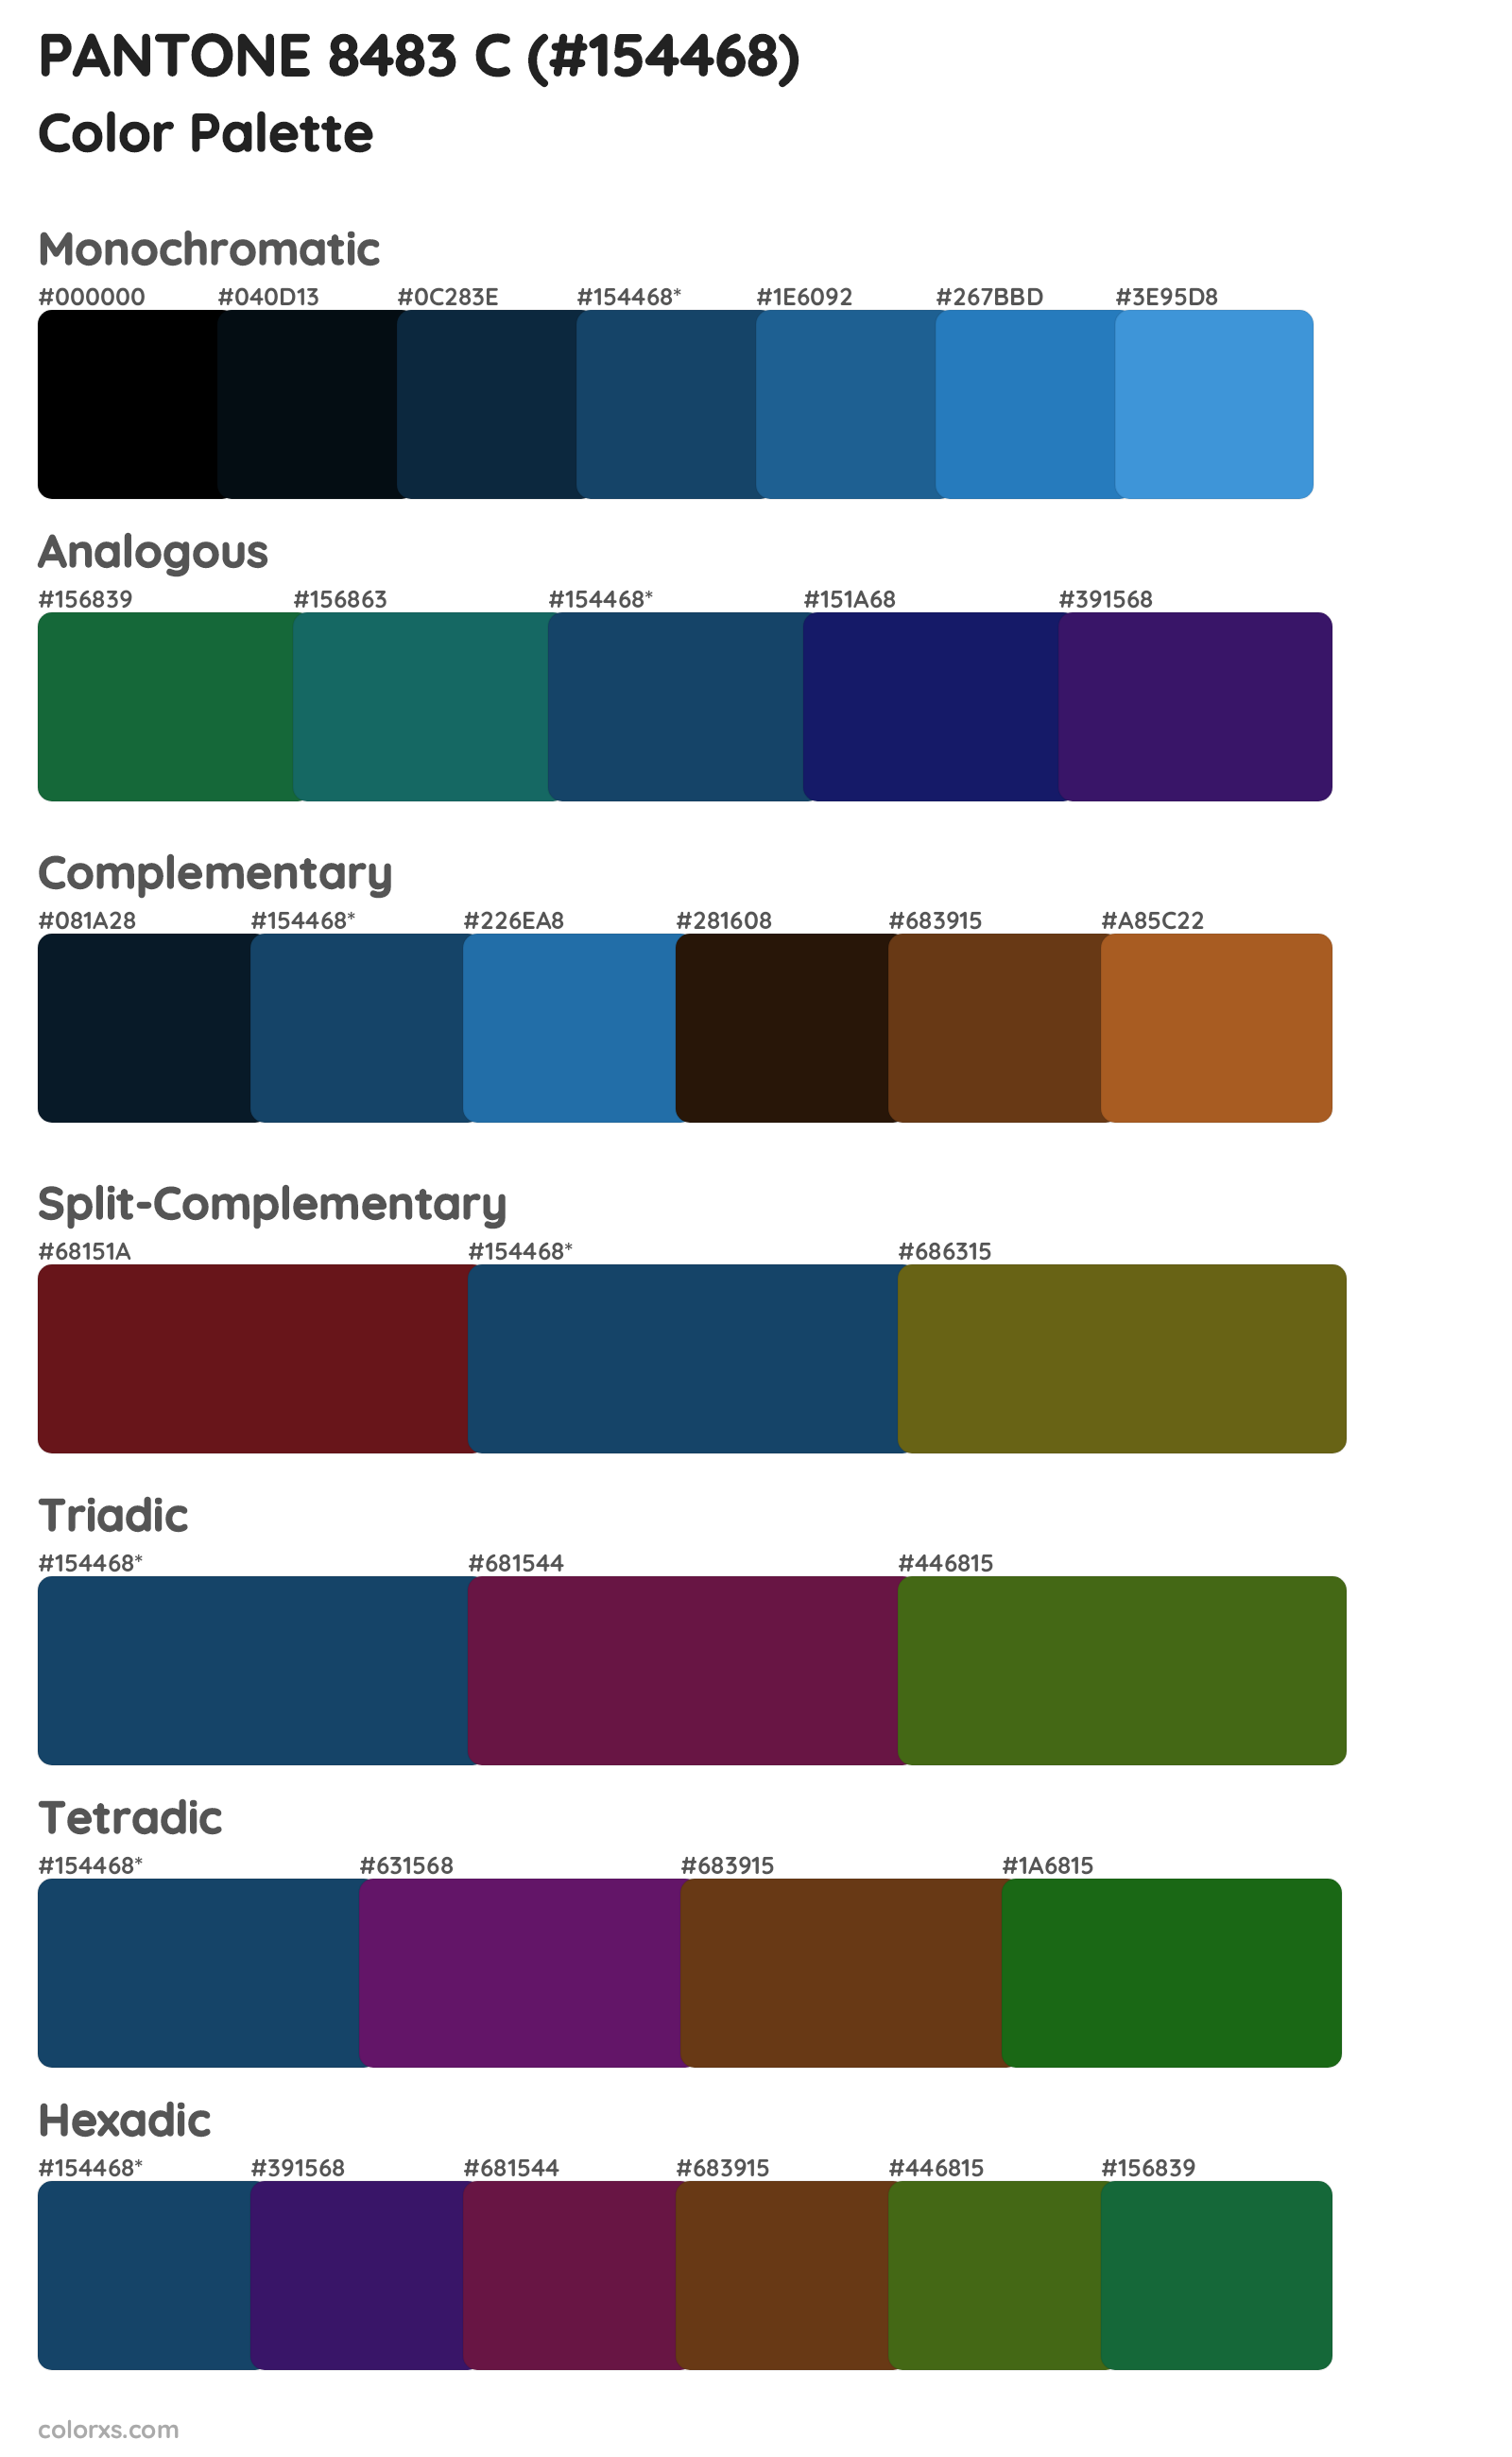 PANTONE 8483 C Color Scheme Palettes